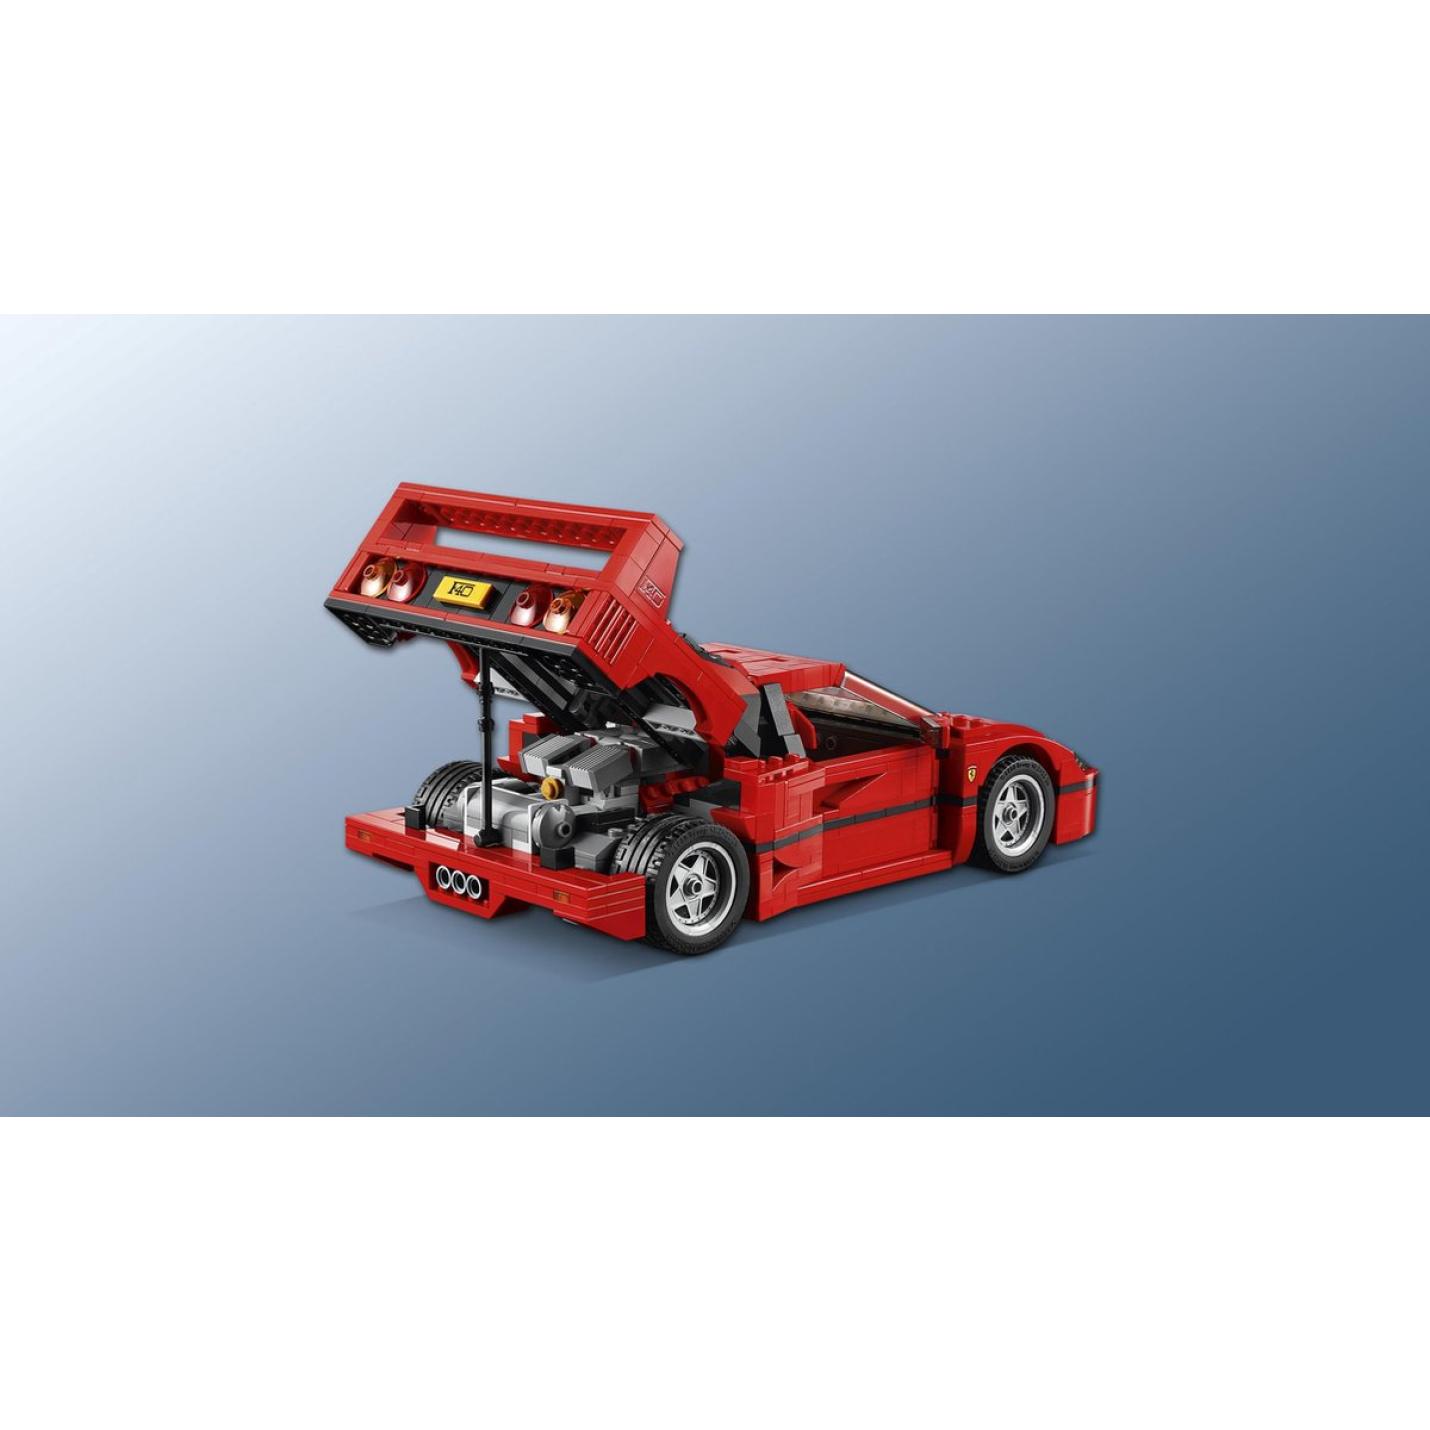 LEGO Creator Expert Ferrari F40 - 10248 5